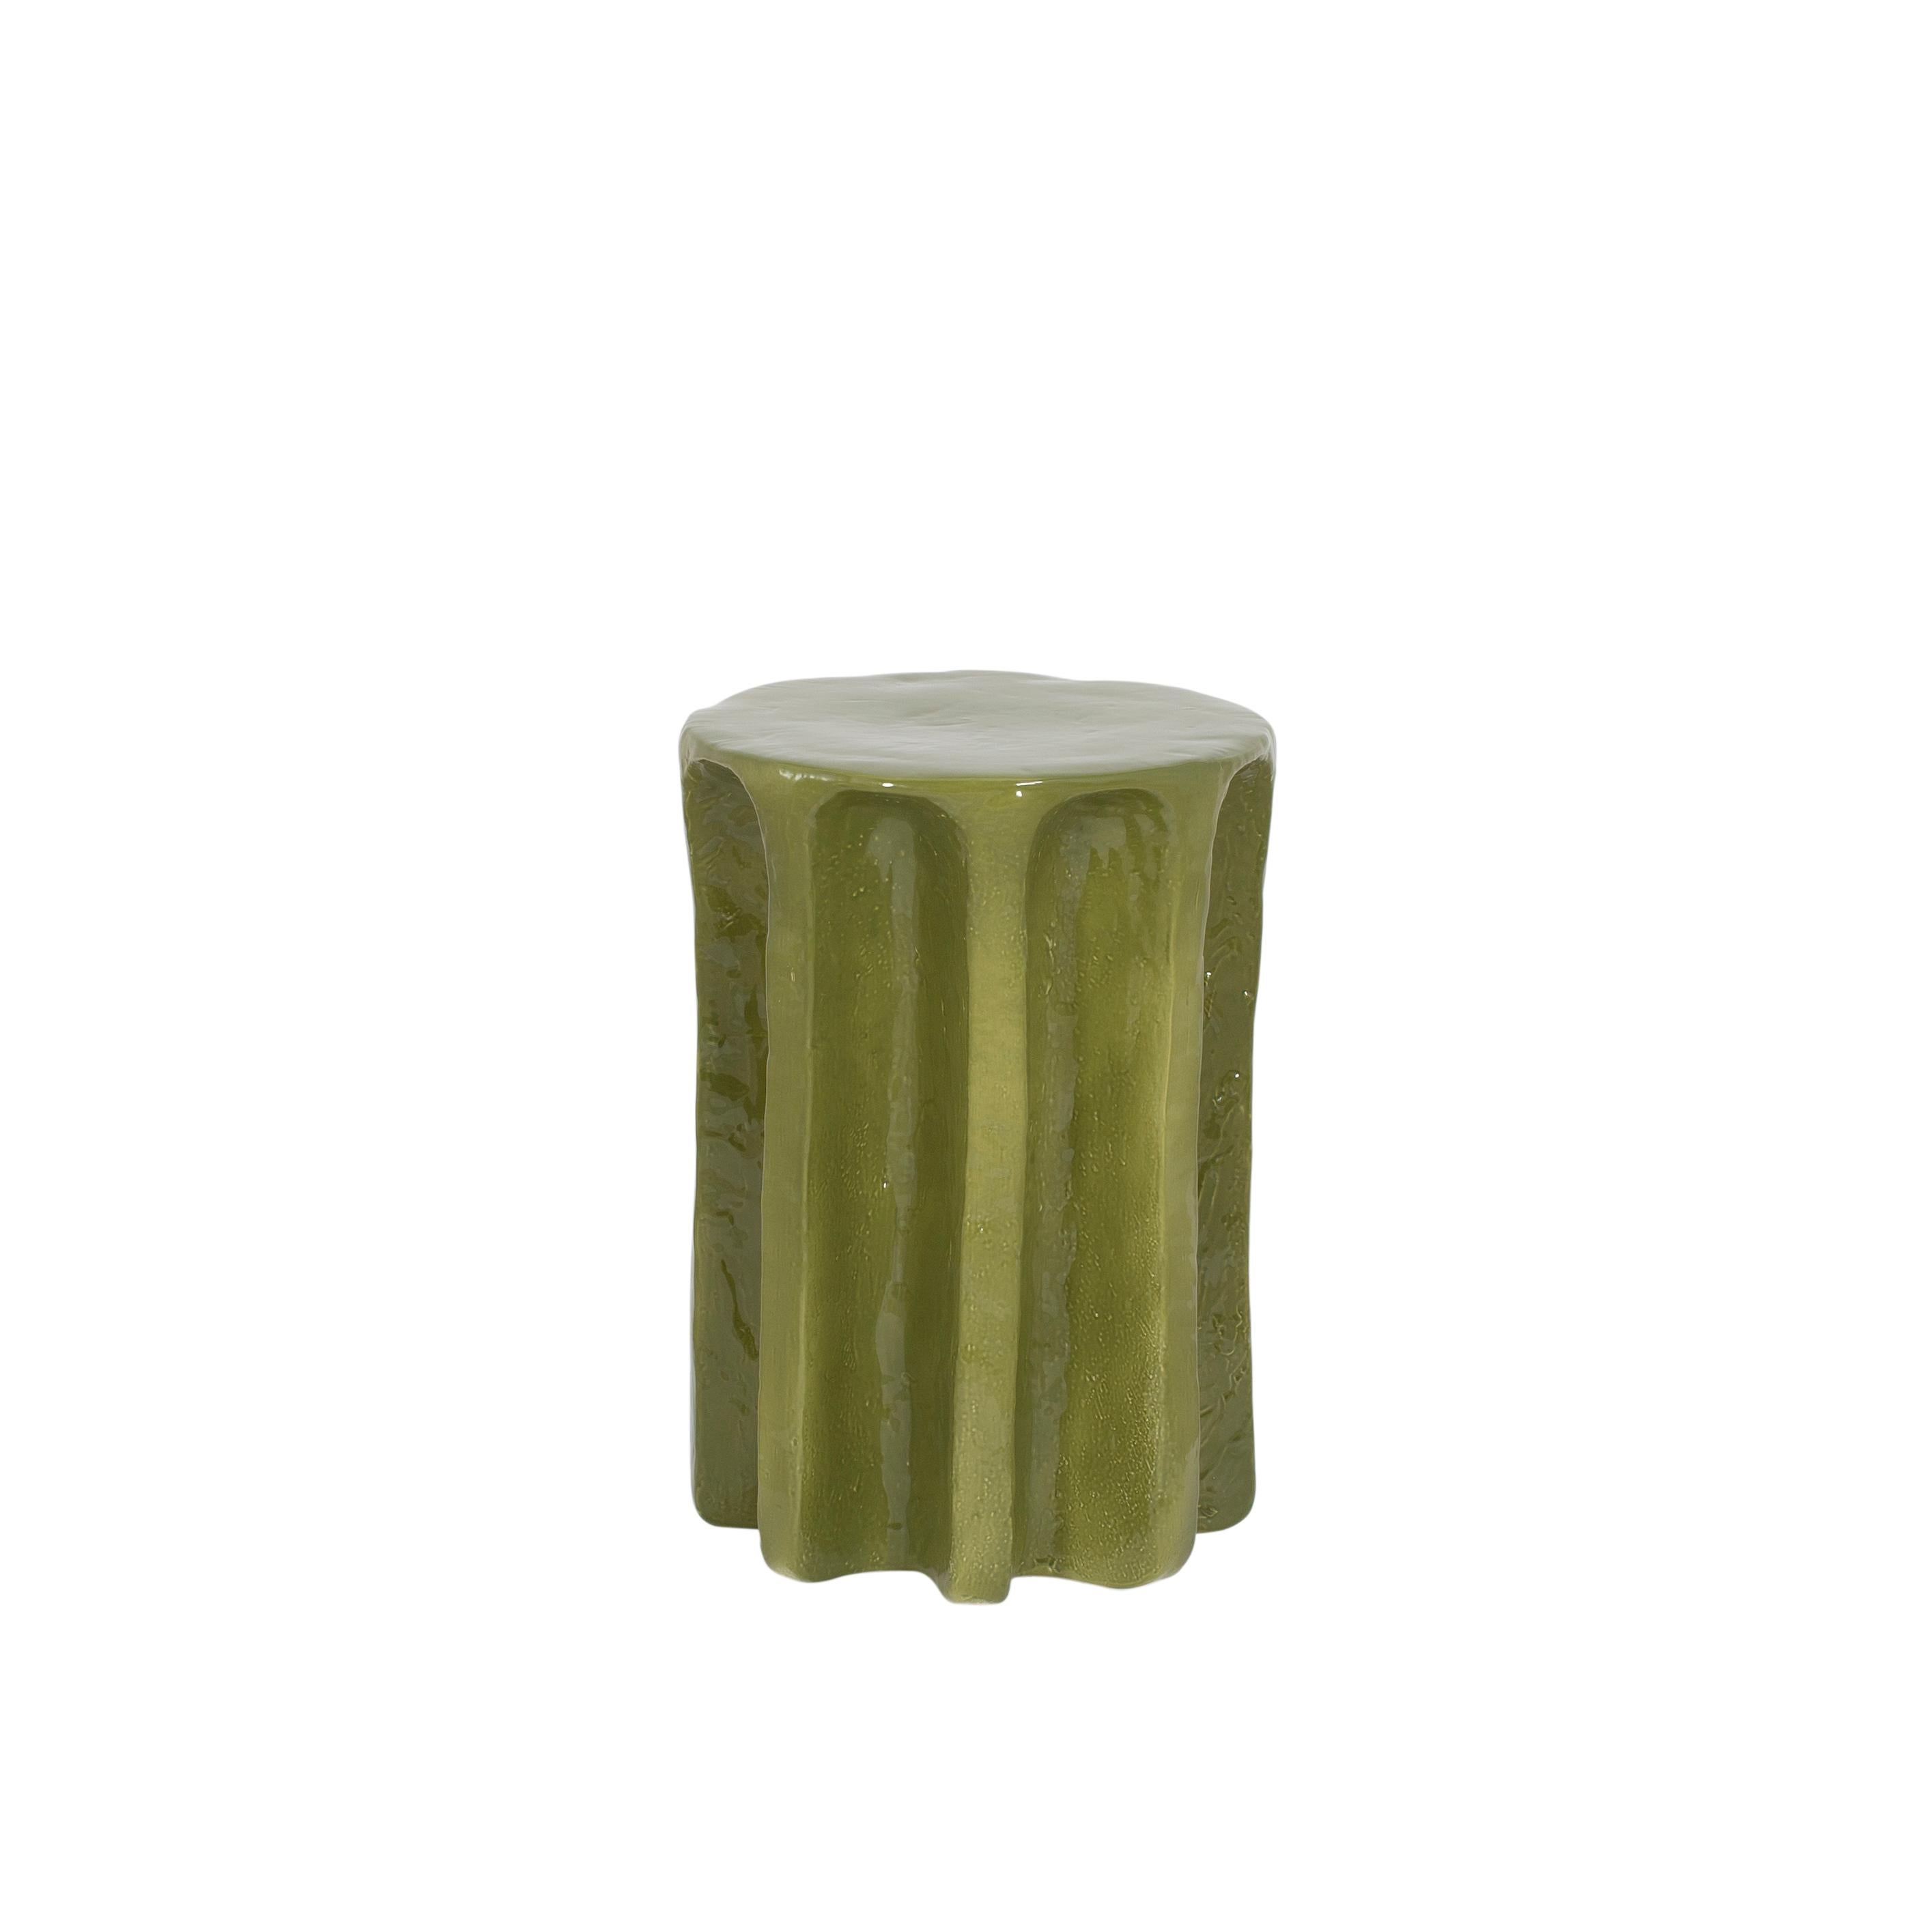 Chouchou hoher grüner beistelltisch von Pulpo
Abmessungen: T39 x H57 cm
MATERIALIEN: Keramik

Auch in verschiedenen Farben erhältlich. 

Chouchou trägt die Umrisse einer antiken Säule - was, so wie ich den Designer Lorenzo Zanovello kenne,